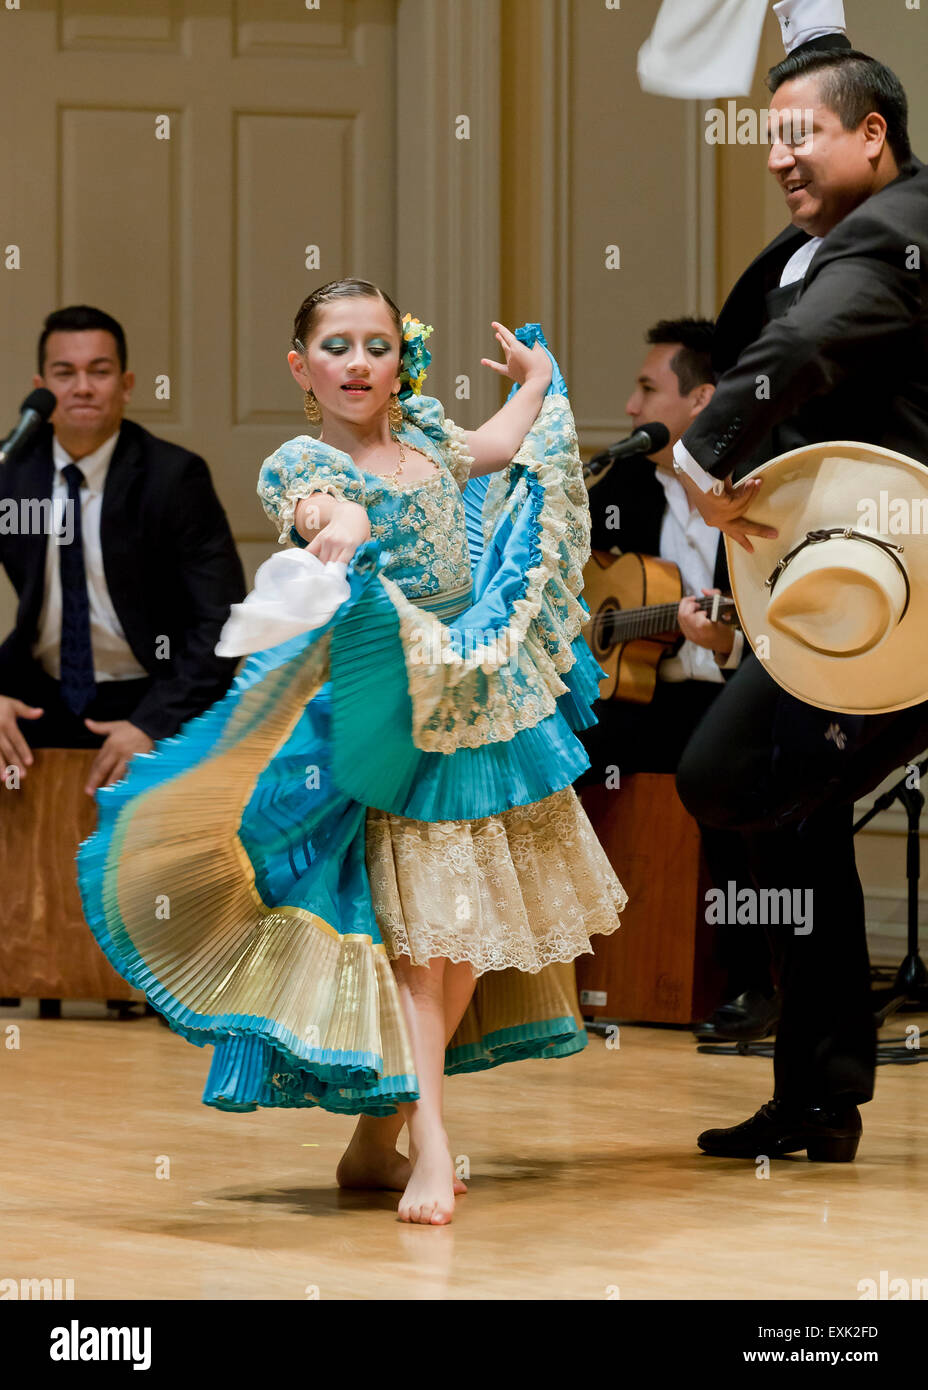 La Marinera Norteña populaire péruvien (danseurs) Banque D'Images